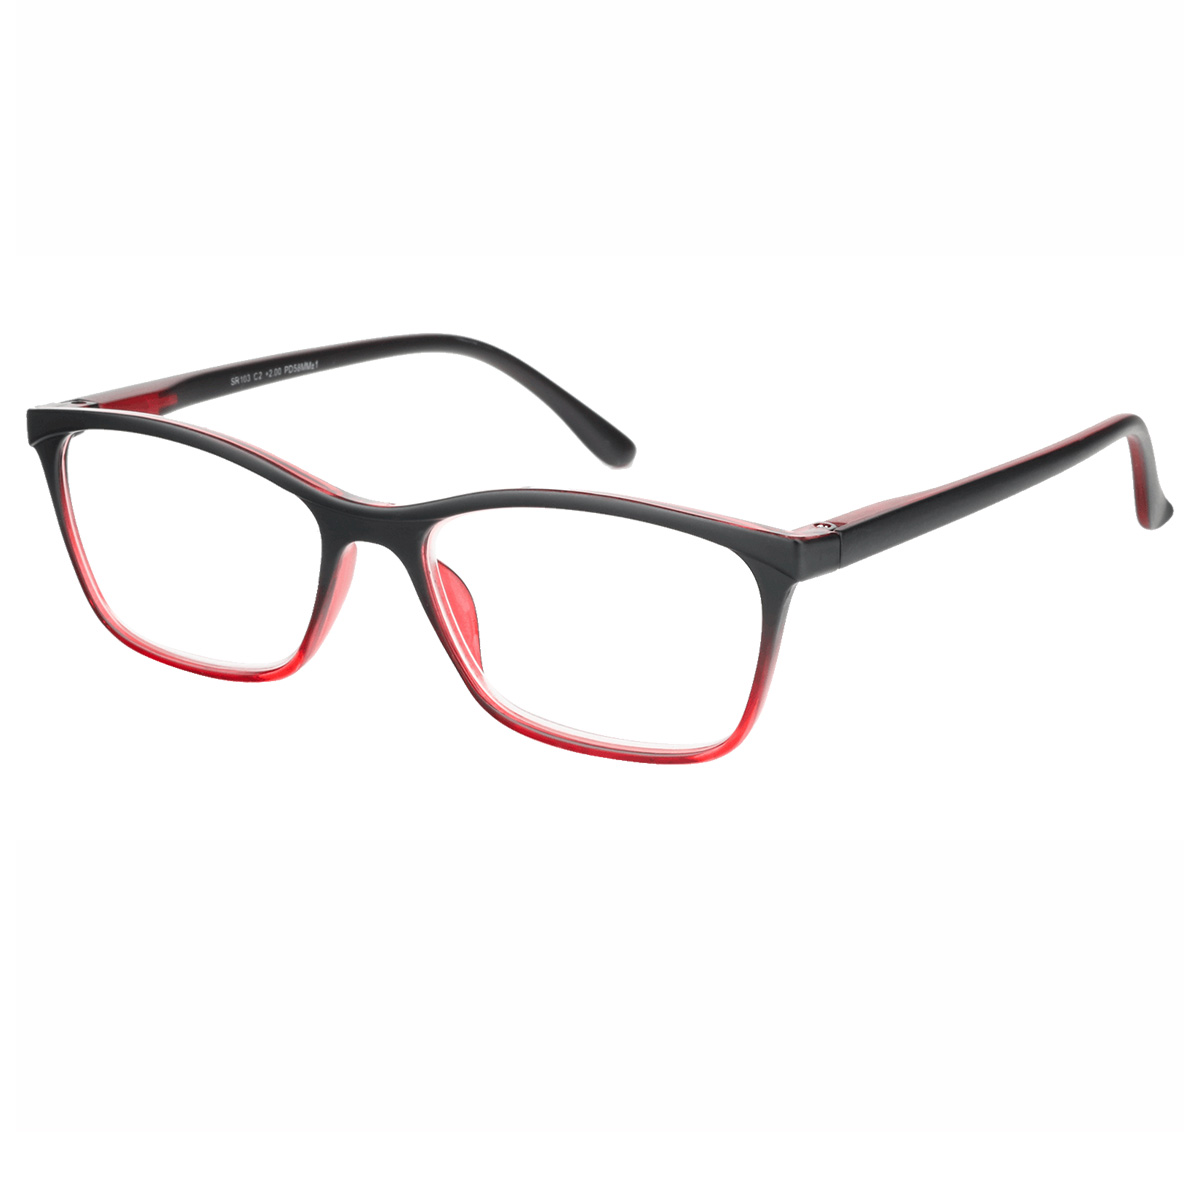 Dai - Rectangle Red-Black Reading Glasses for Men & Women